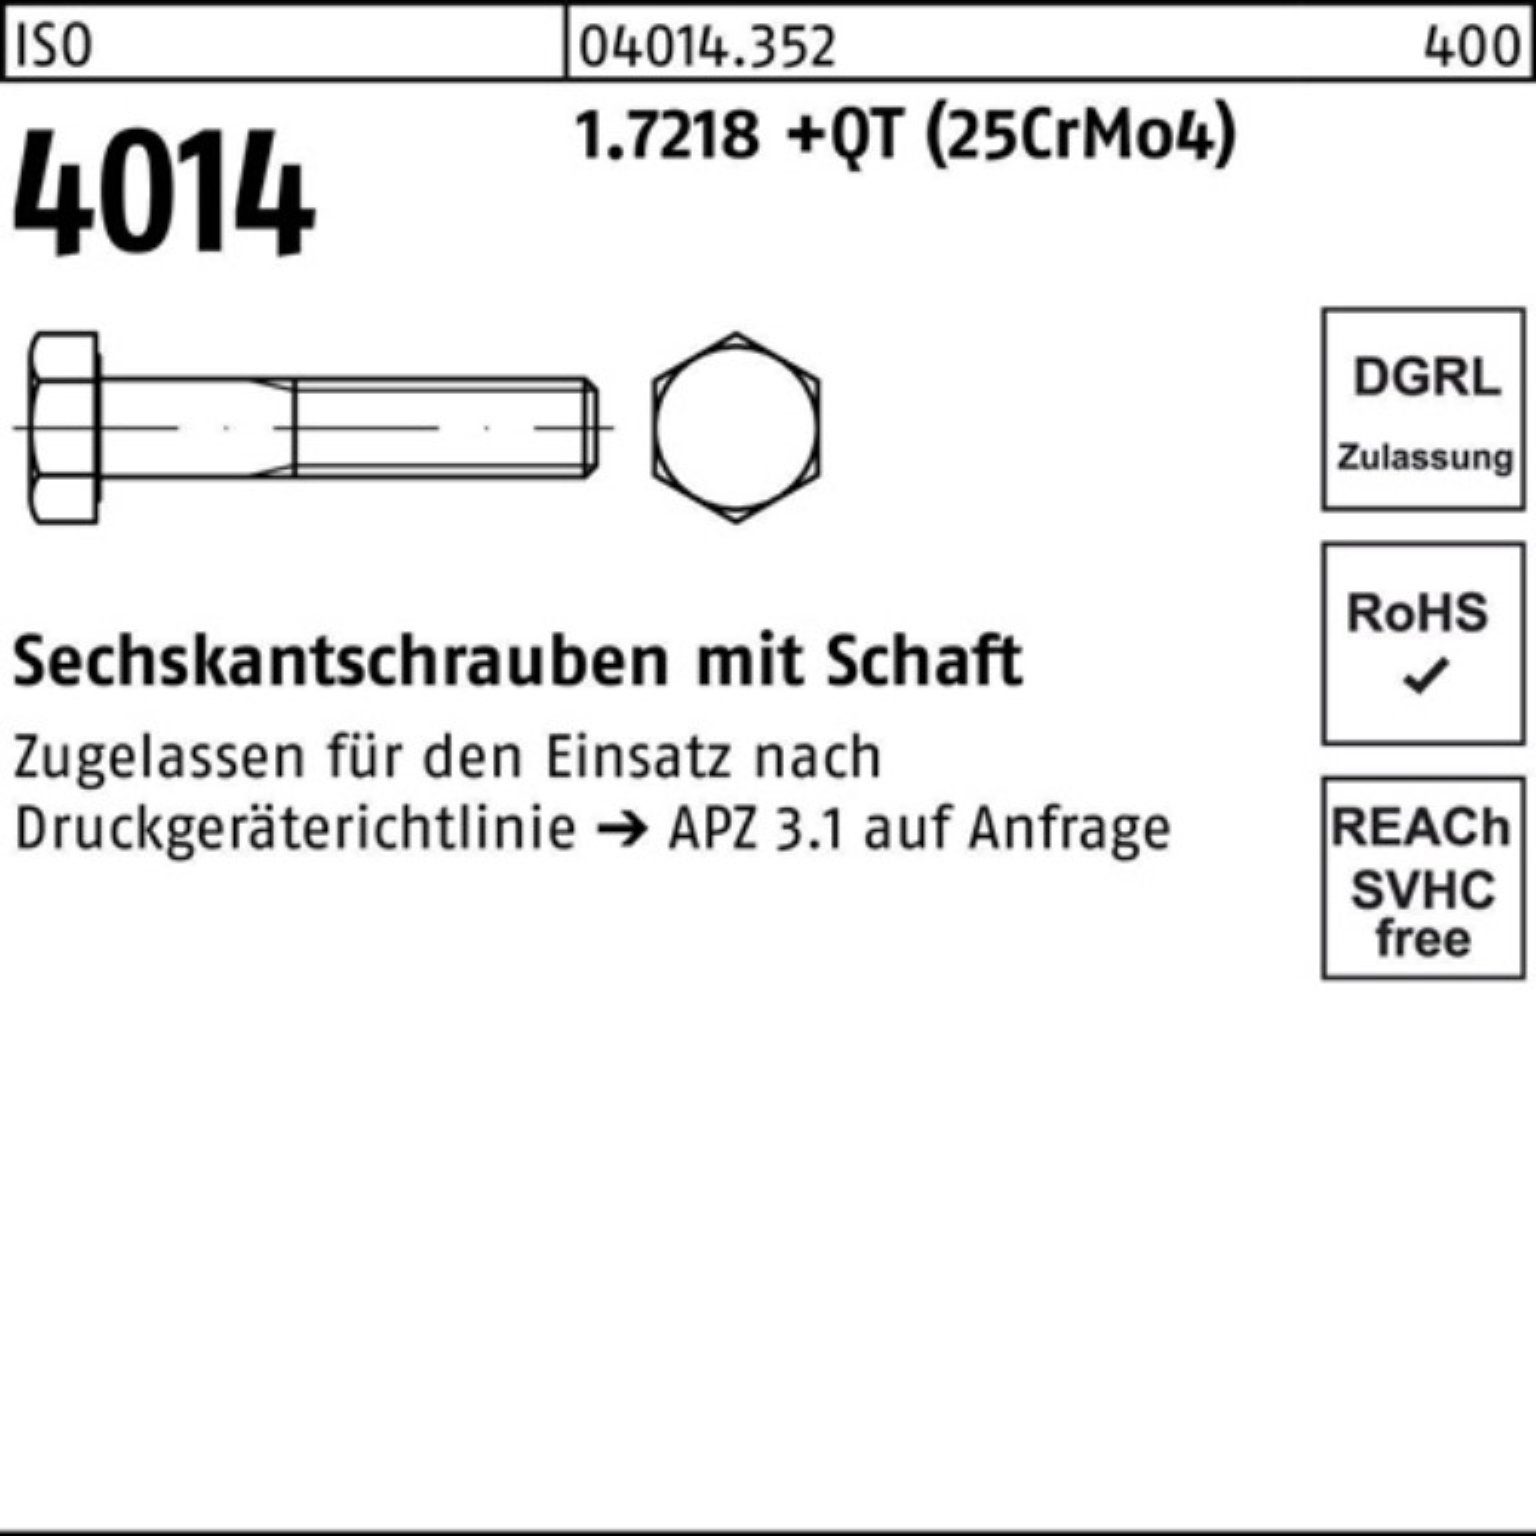 Bufab Sechskantschraube 100er Pack Sechskantschraube M36x ISO Schaft 4014 1.7218 +QT 200 (25Cr